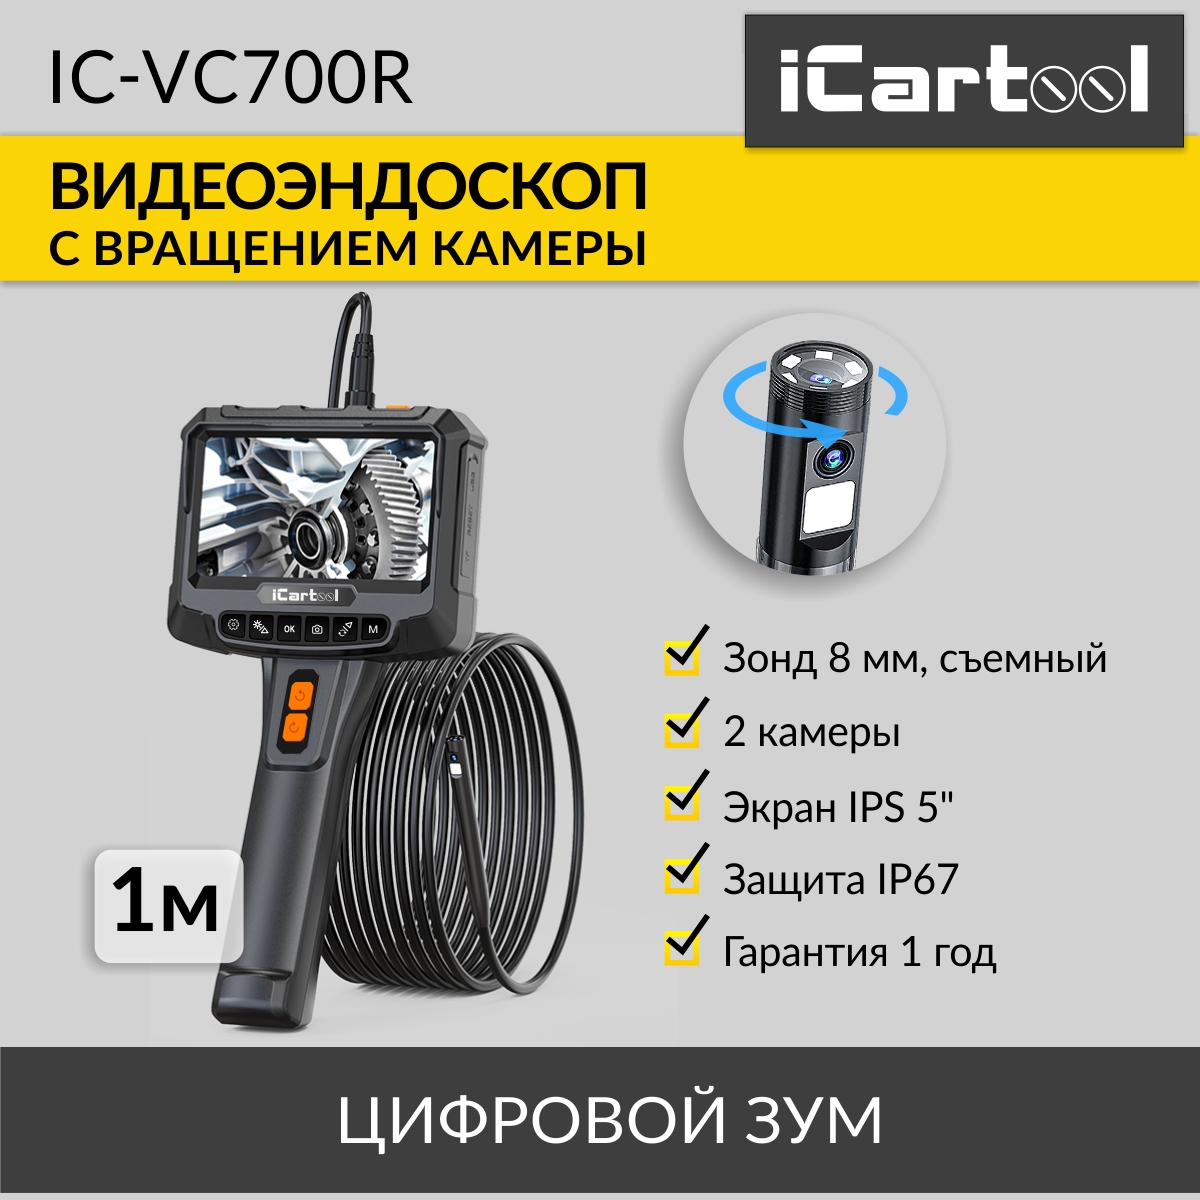 Видеоэндоскоп iCartool IC-VC700R промышленный, 5